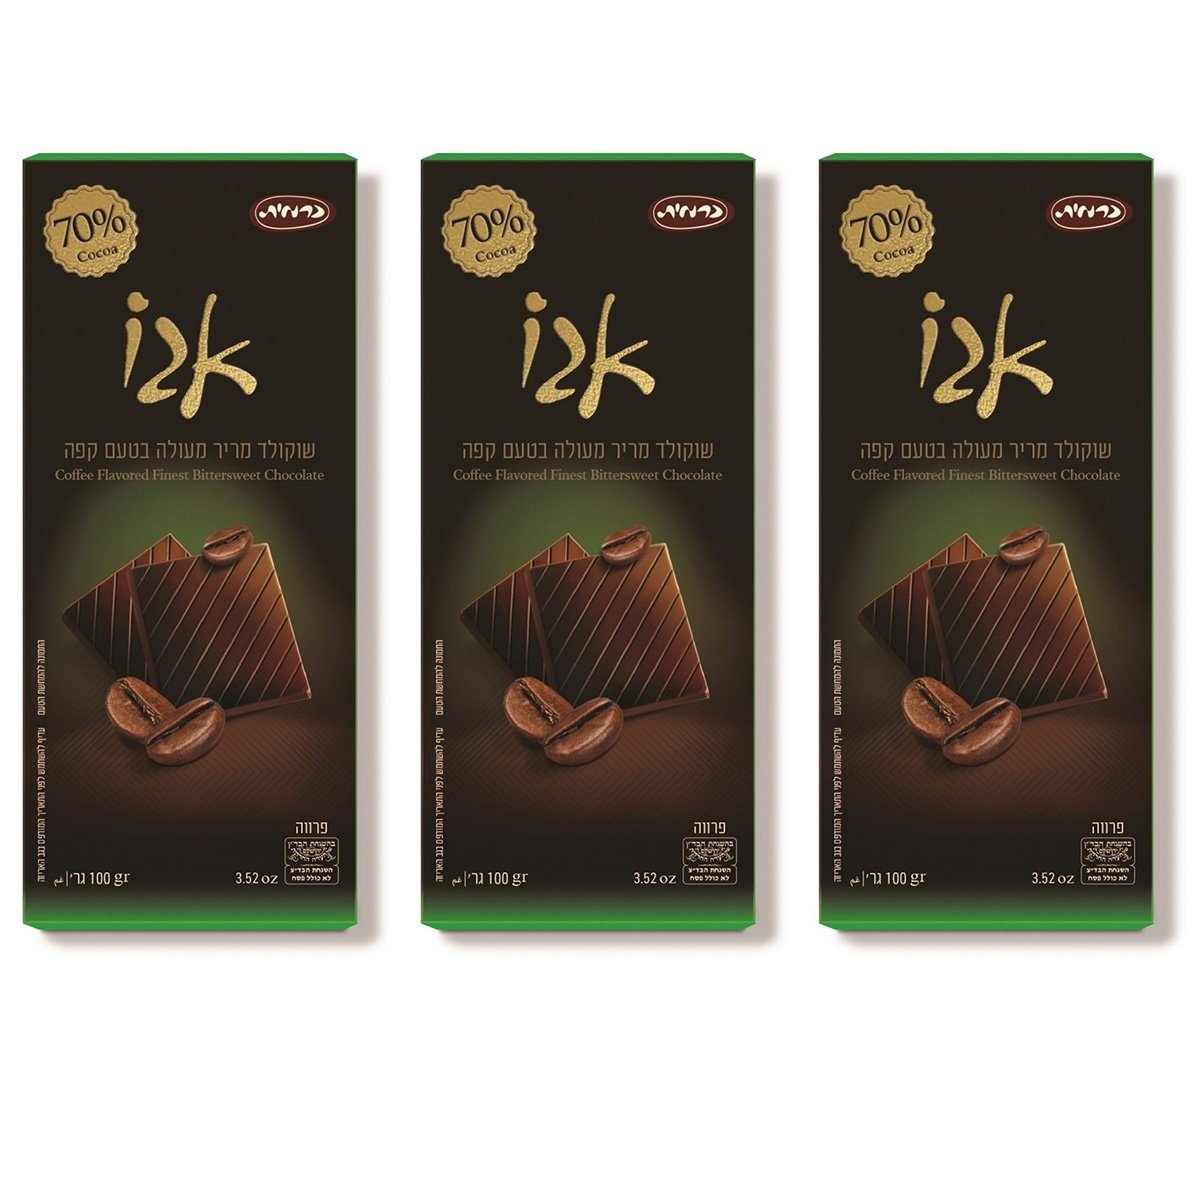 3-Pack of Kosher Premium 70% Cocoa Coffee-Flavored Dark Chocolate Bars - 1